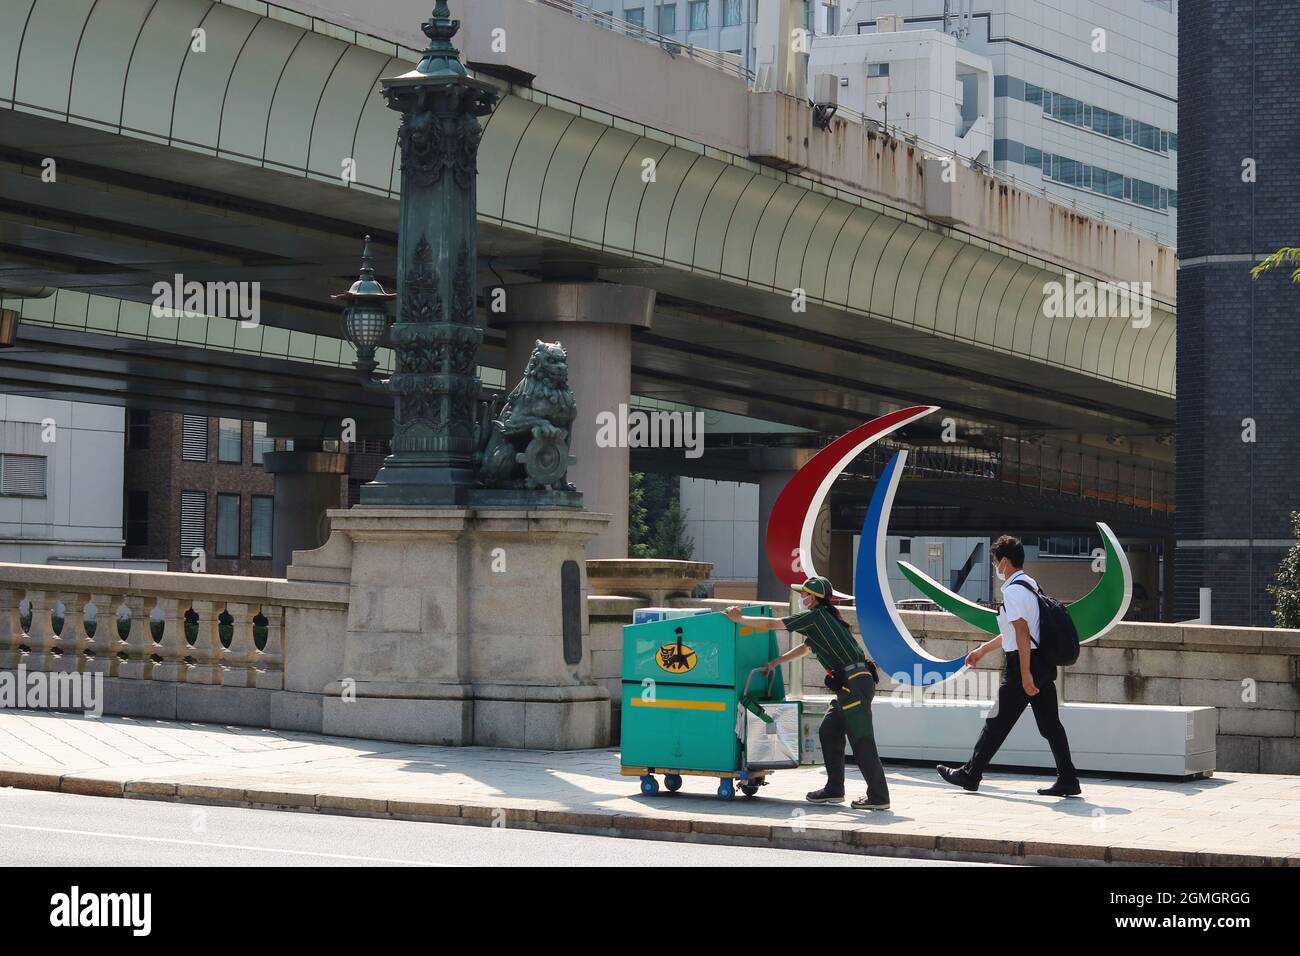 La gente, incluido un trabajador de reparto de Yamato, pasa por un monumento con el símbolo paralímpico junto a una estatua de un león en el puente de Nihonbashi durante los Juegos Paralímpicos de Tokio. Foto de stock